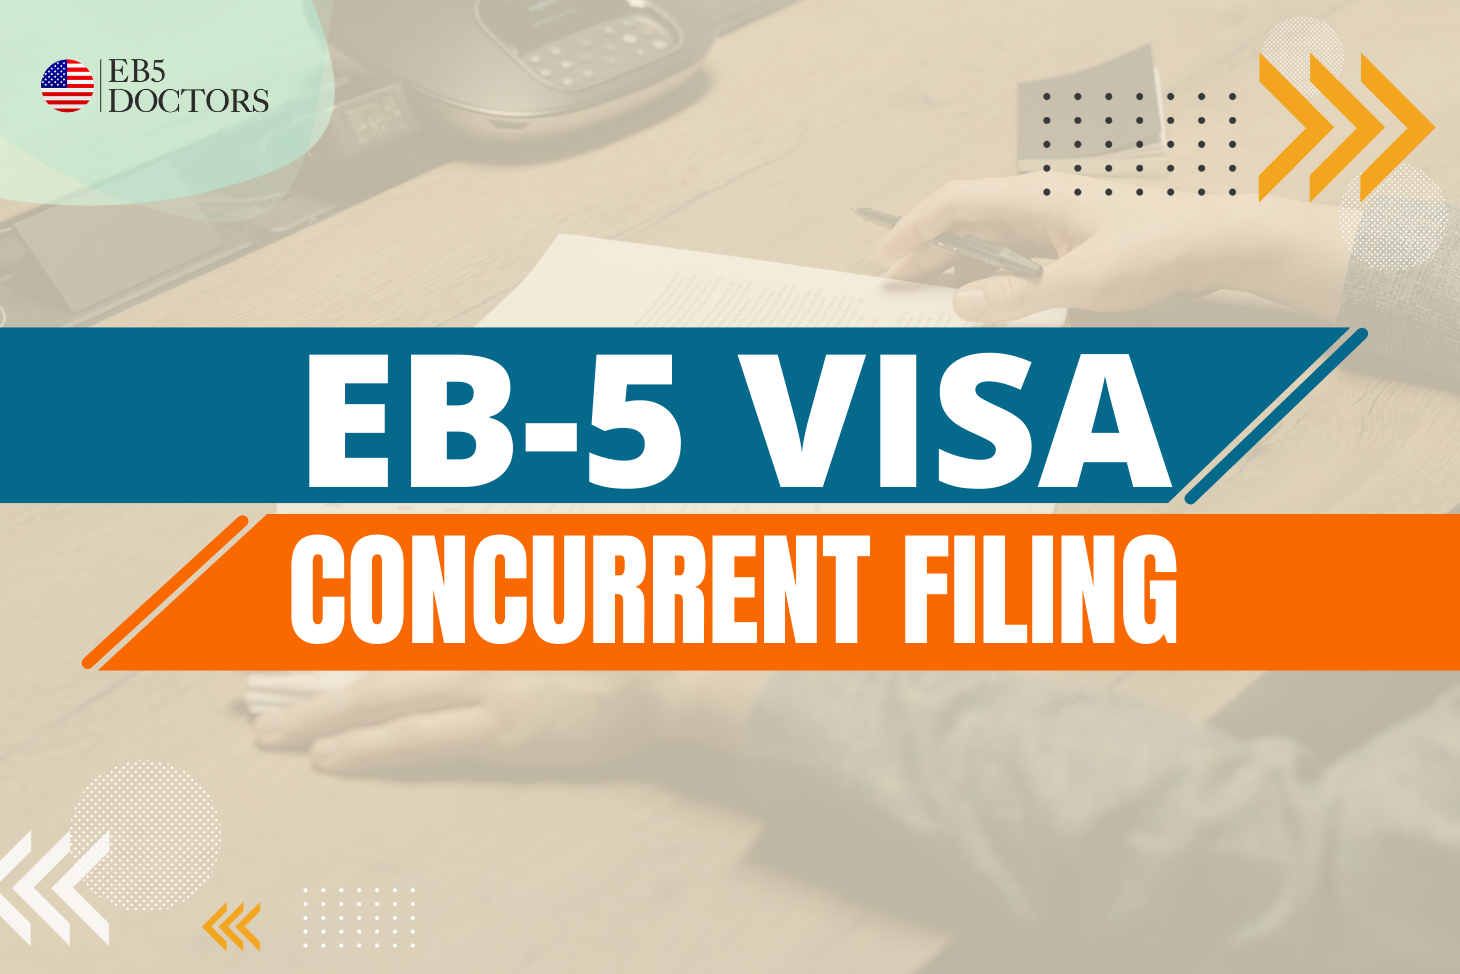 Eb5 visa concurrent filing